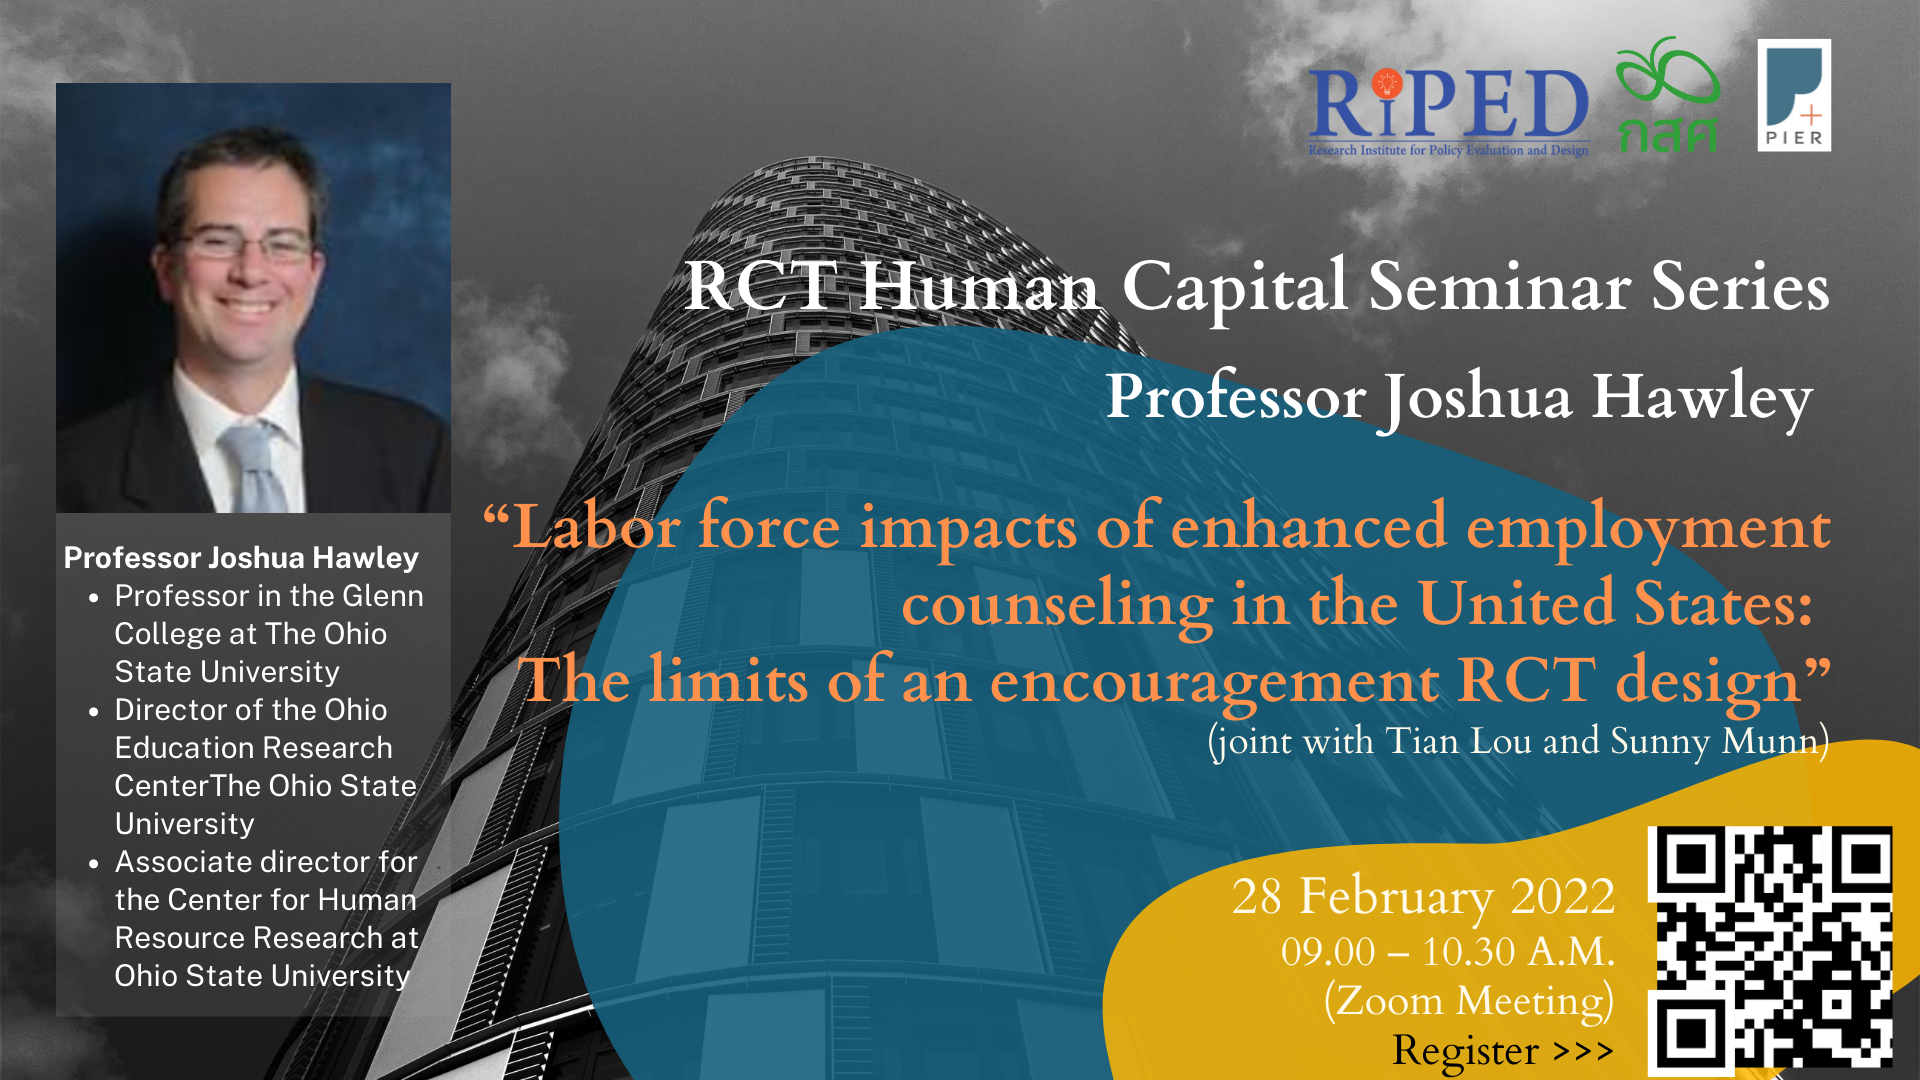 สถาบันวิจัยเพื่อการประเมินและออกแบบนโยบาย (RIPED) มหาวิทยาลัยหอการค้าไทย (UTCC) เชิญร่วมงานสัมมนา RCT Human Capital Seminar Series ครั้งที่ 1